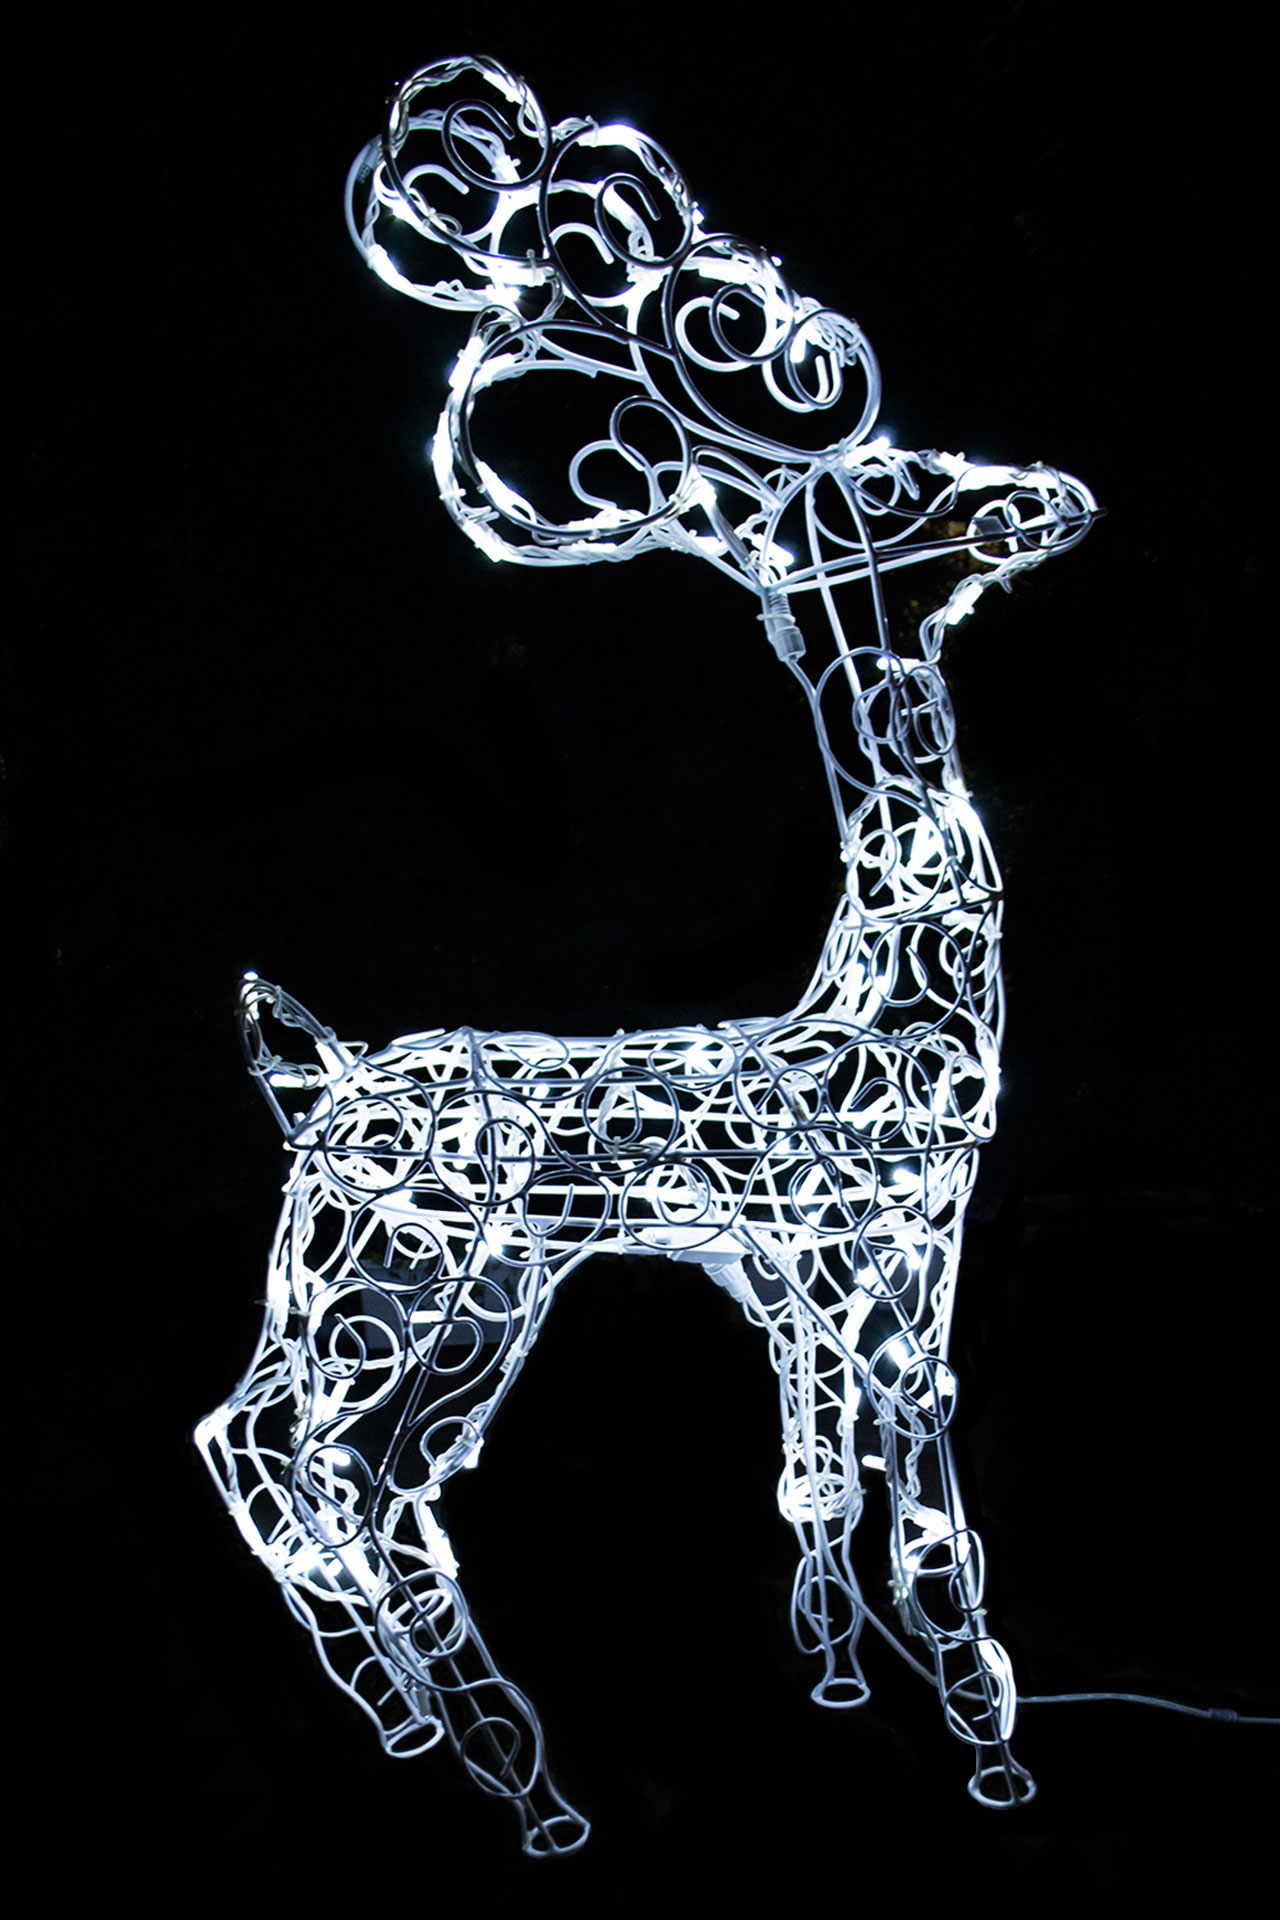 Deer marie. Фигура "олень серебряный" 120см, 120 led, 220v, белый. Декоративная фигура олень 120х55х144см. Фигура оленя 120 см гирлянда. Светодиодные фигуры уличные АЛИЭКСПРЕСС.